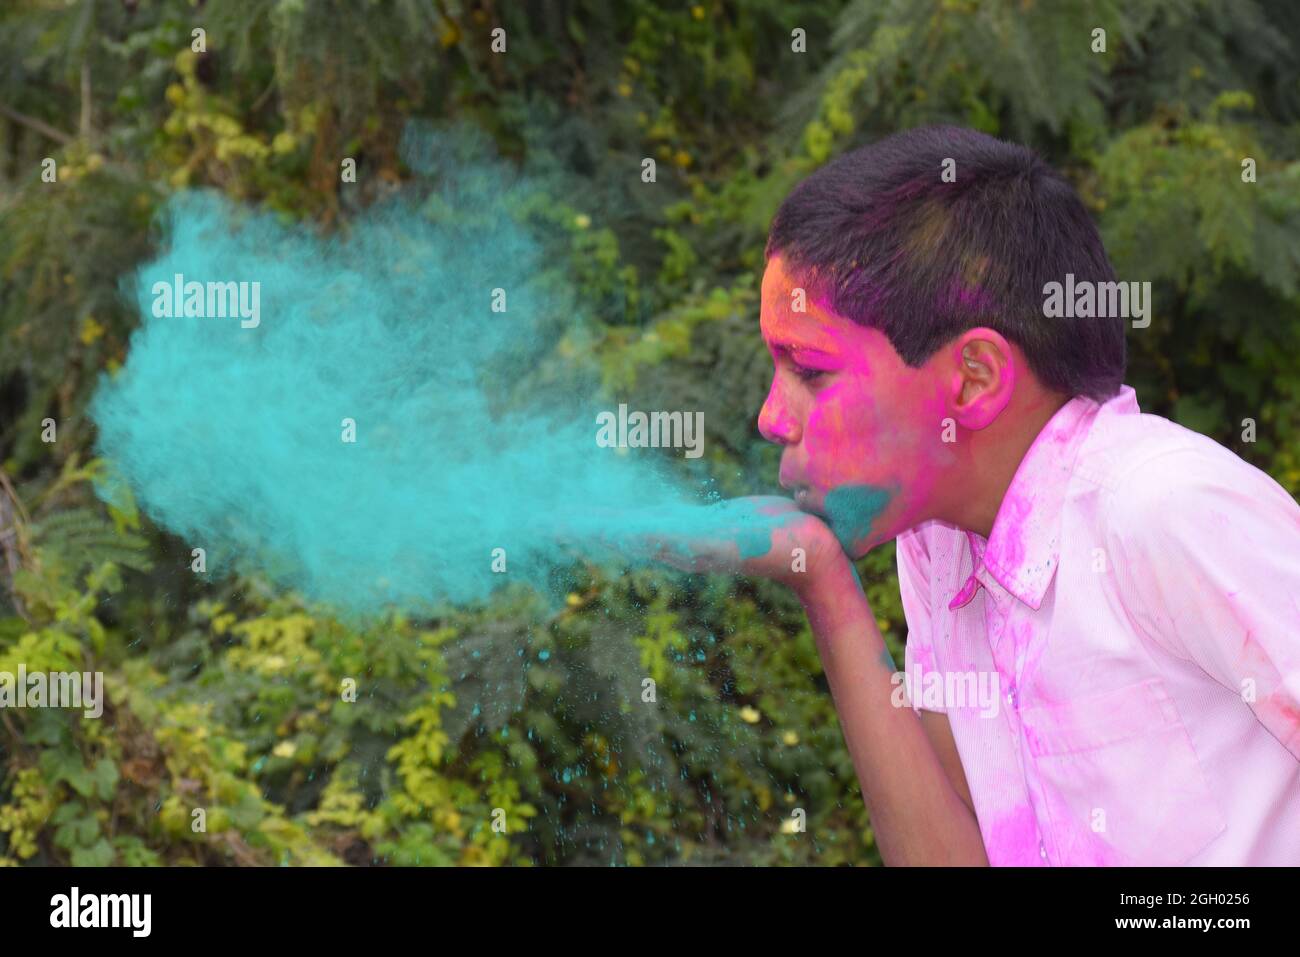 Garçon jouant avec des couleurs, dans une humeur heureuse. Concept pour le festival indien Holi Banque D'Images